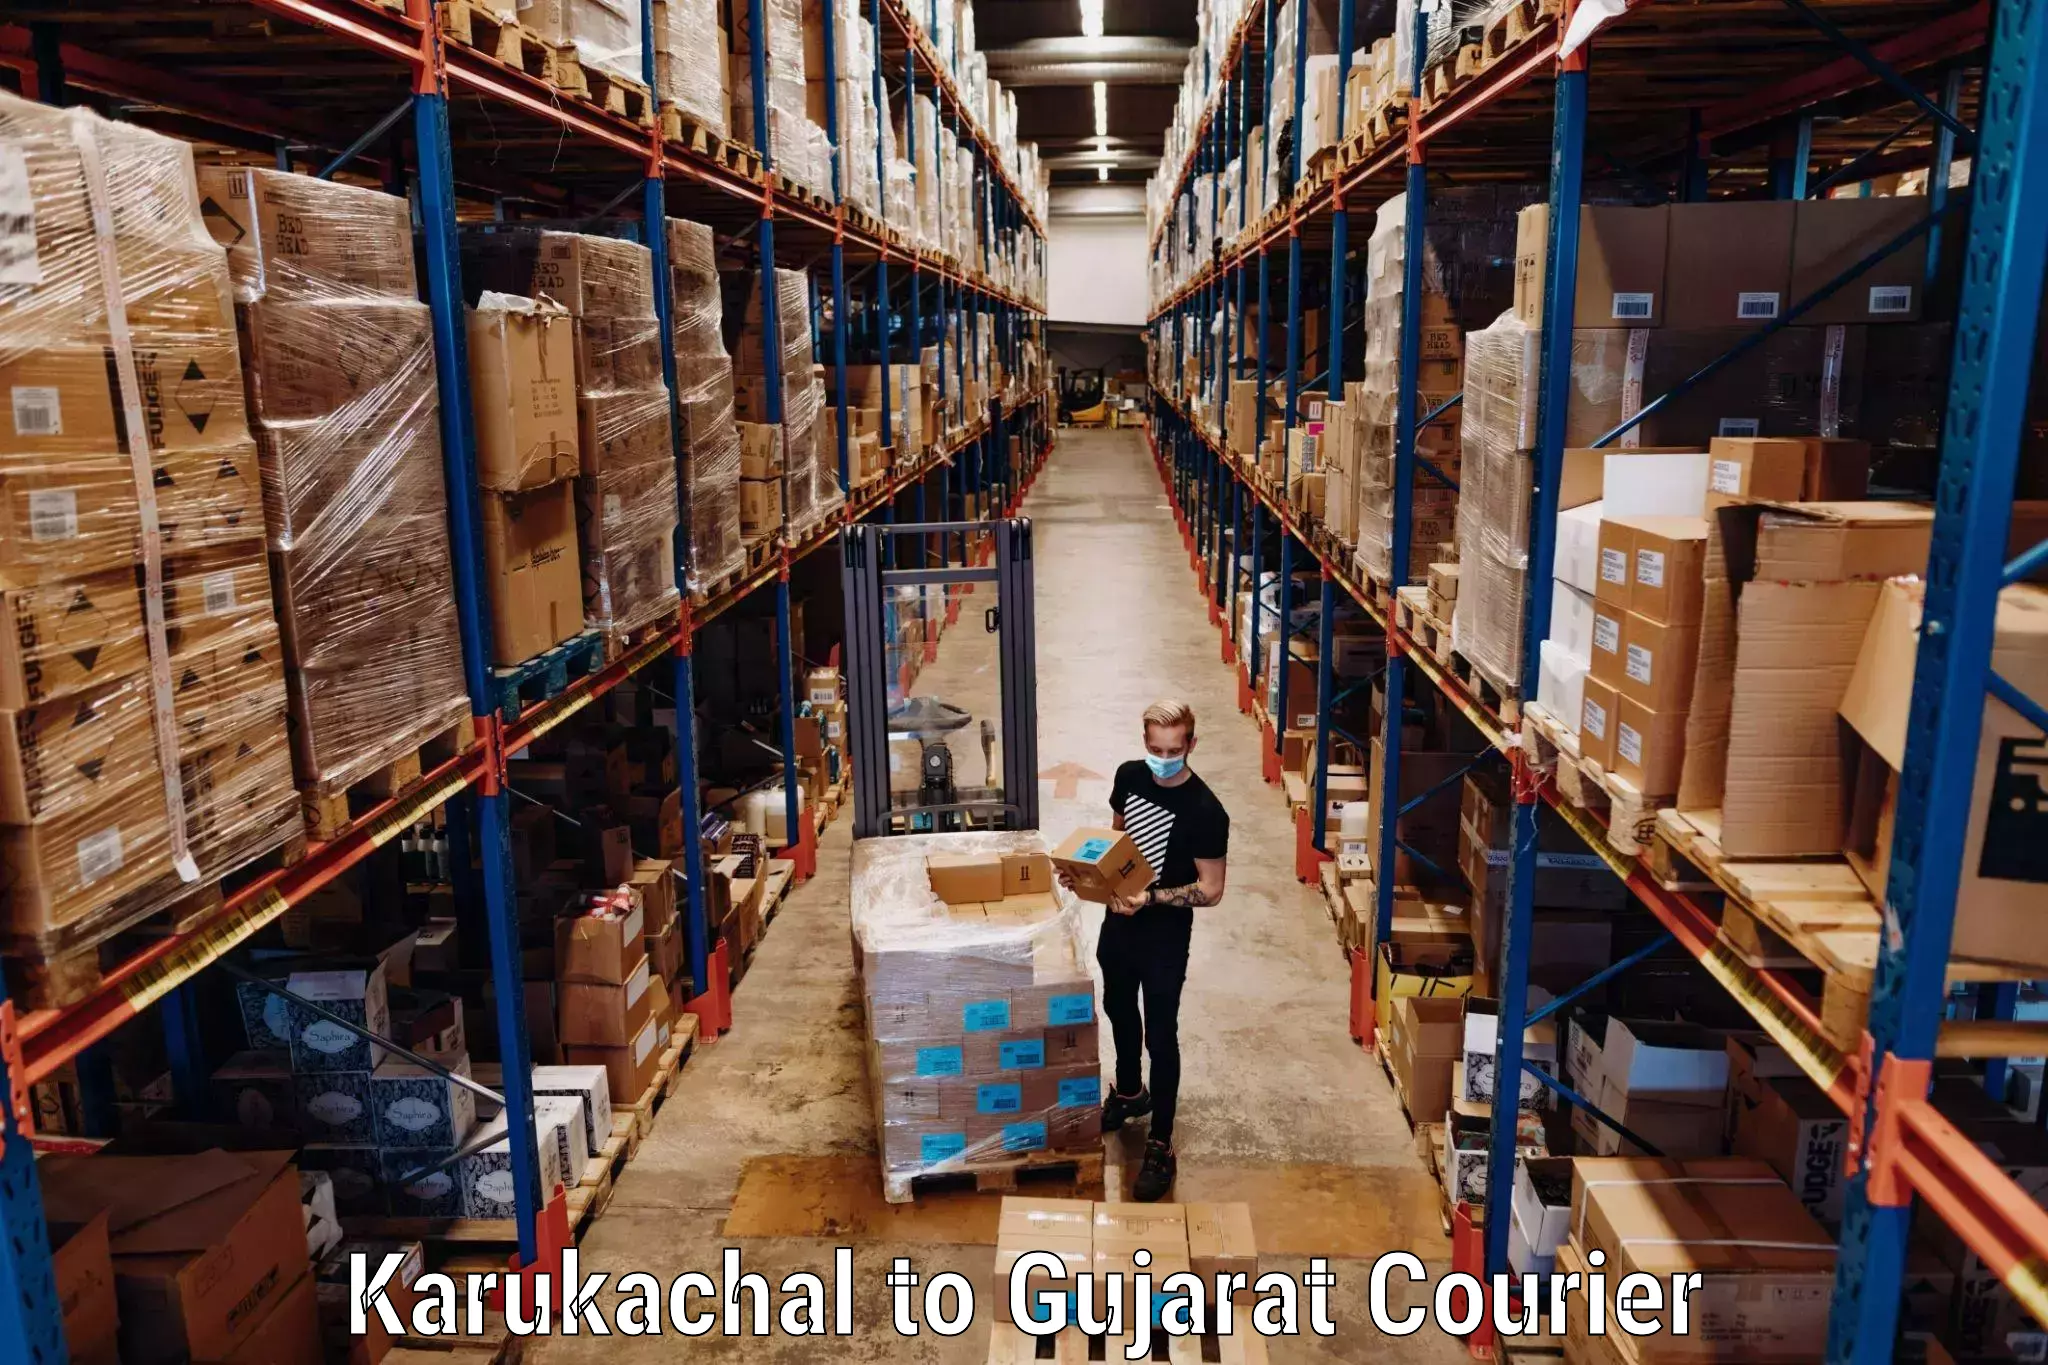 Group luggage shipping in Karukachal to Karjan